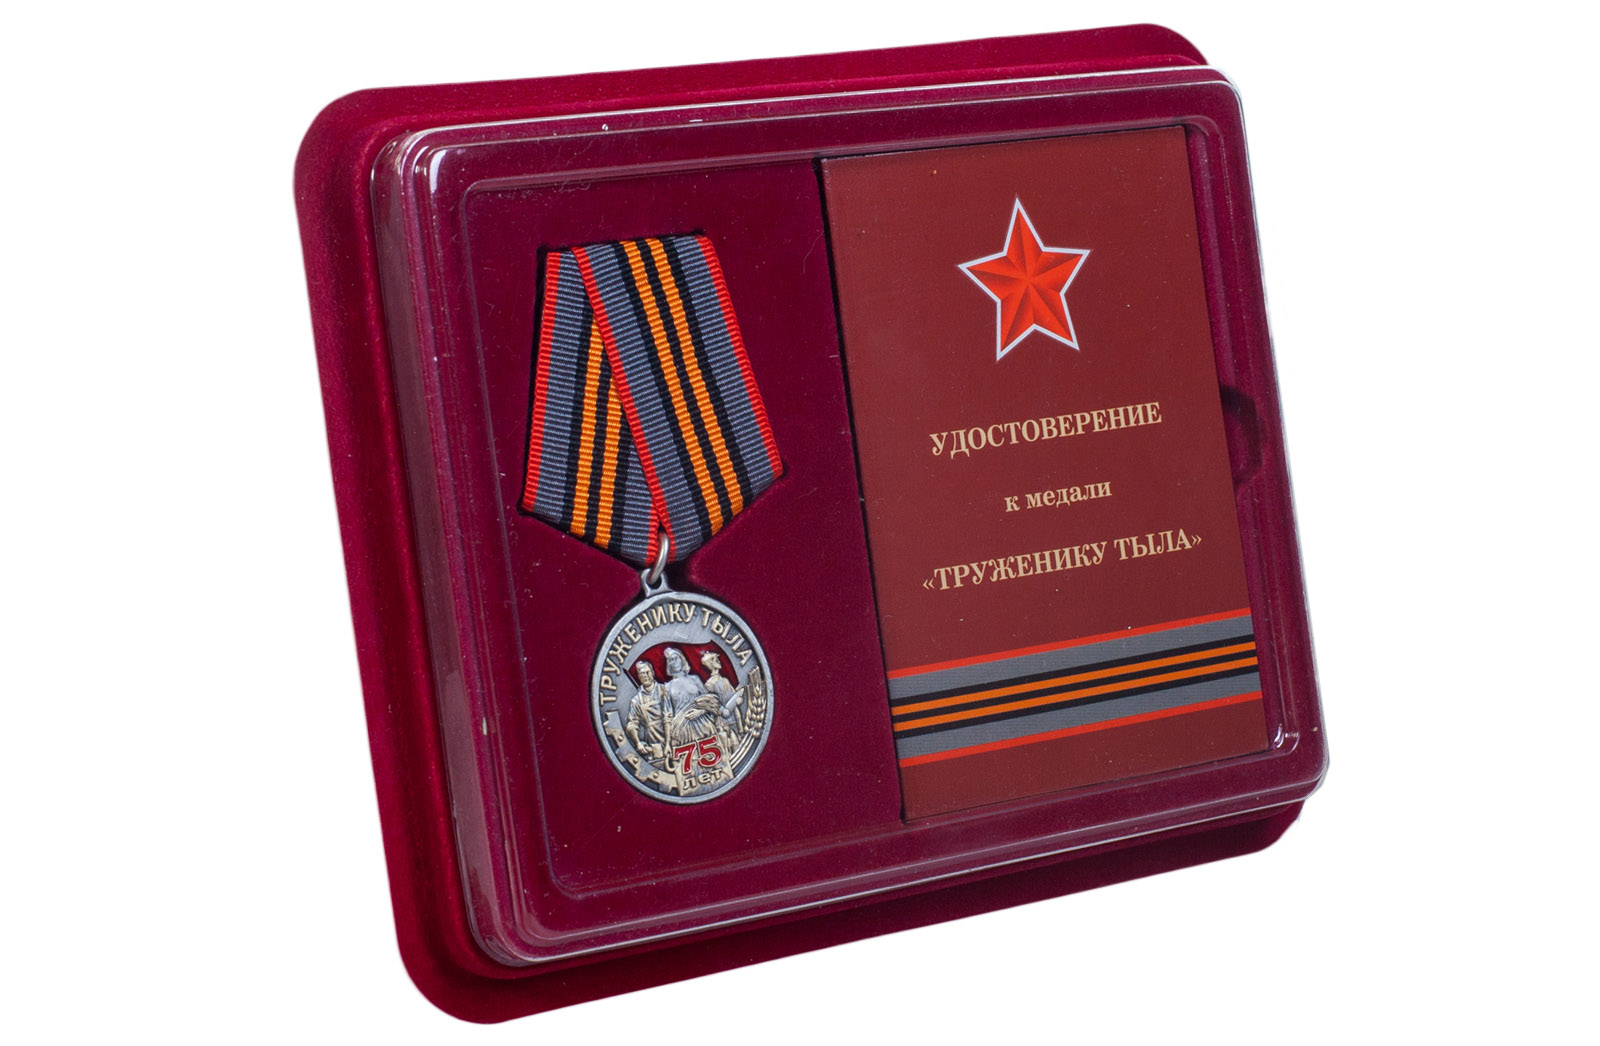 Купить общественную медаль к 75-летию Победы в ВОВ Труженику тыла с доставкой